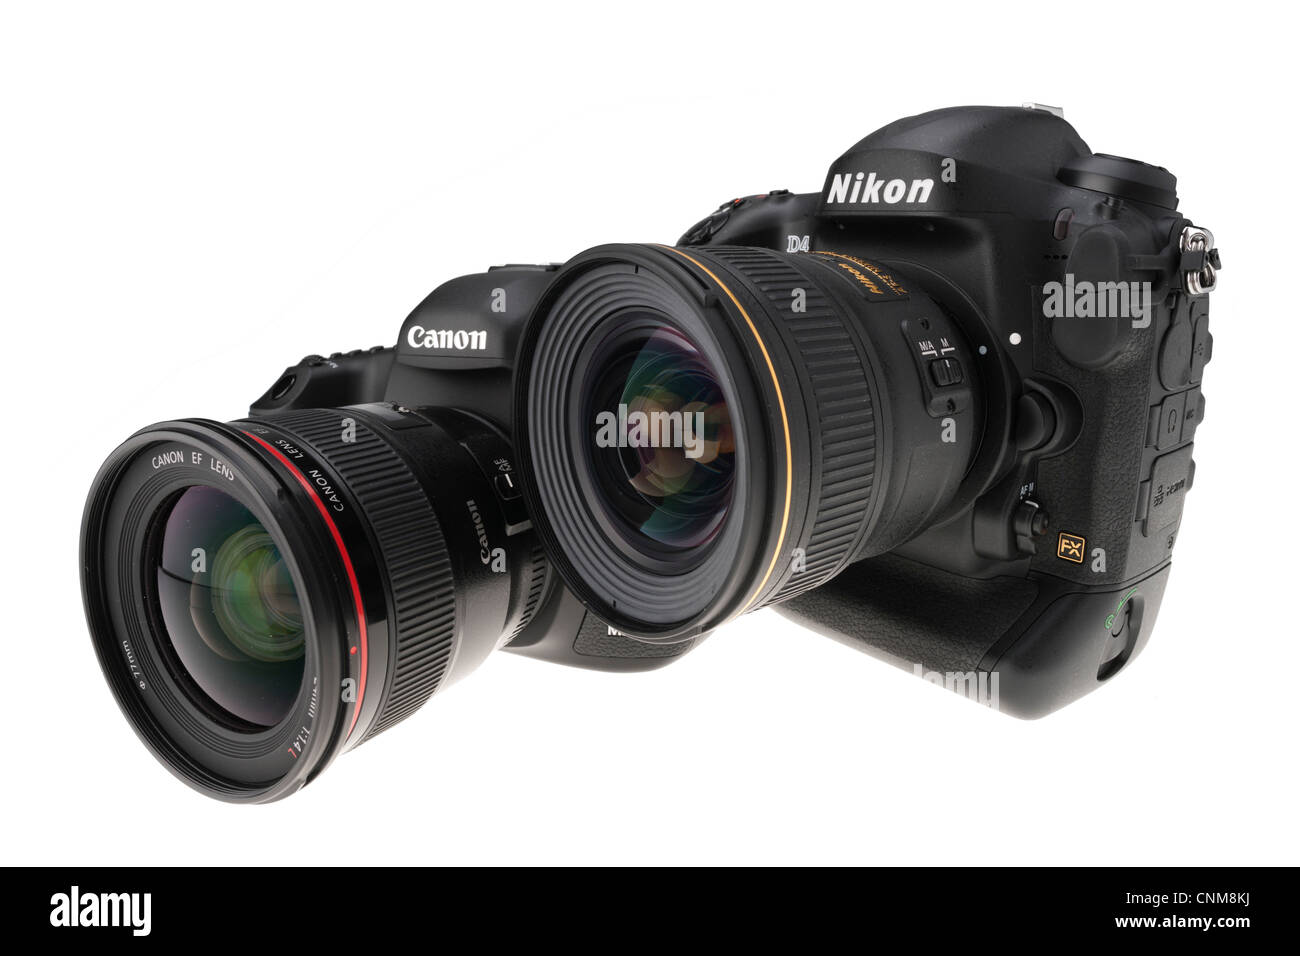 Le matériel photographique - Nikon D4 et le Canon EOS 5D MkIII réflex, 2012 Matériel professionnel Banque D'Images